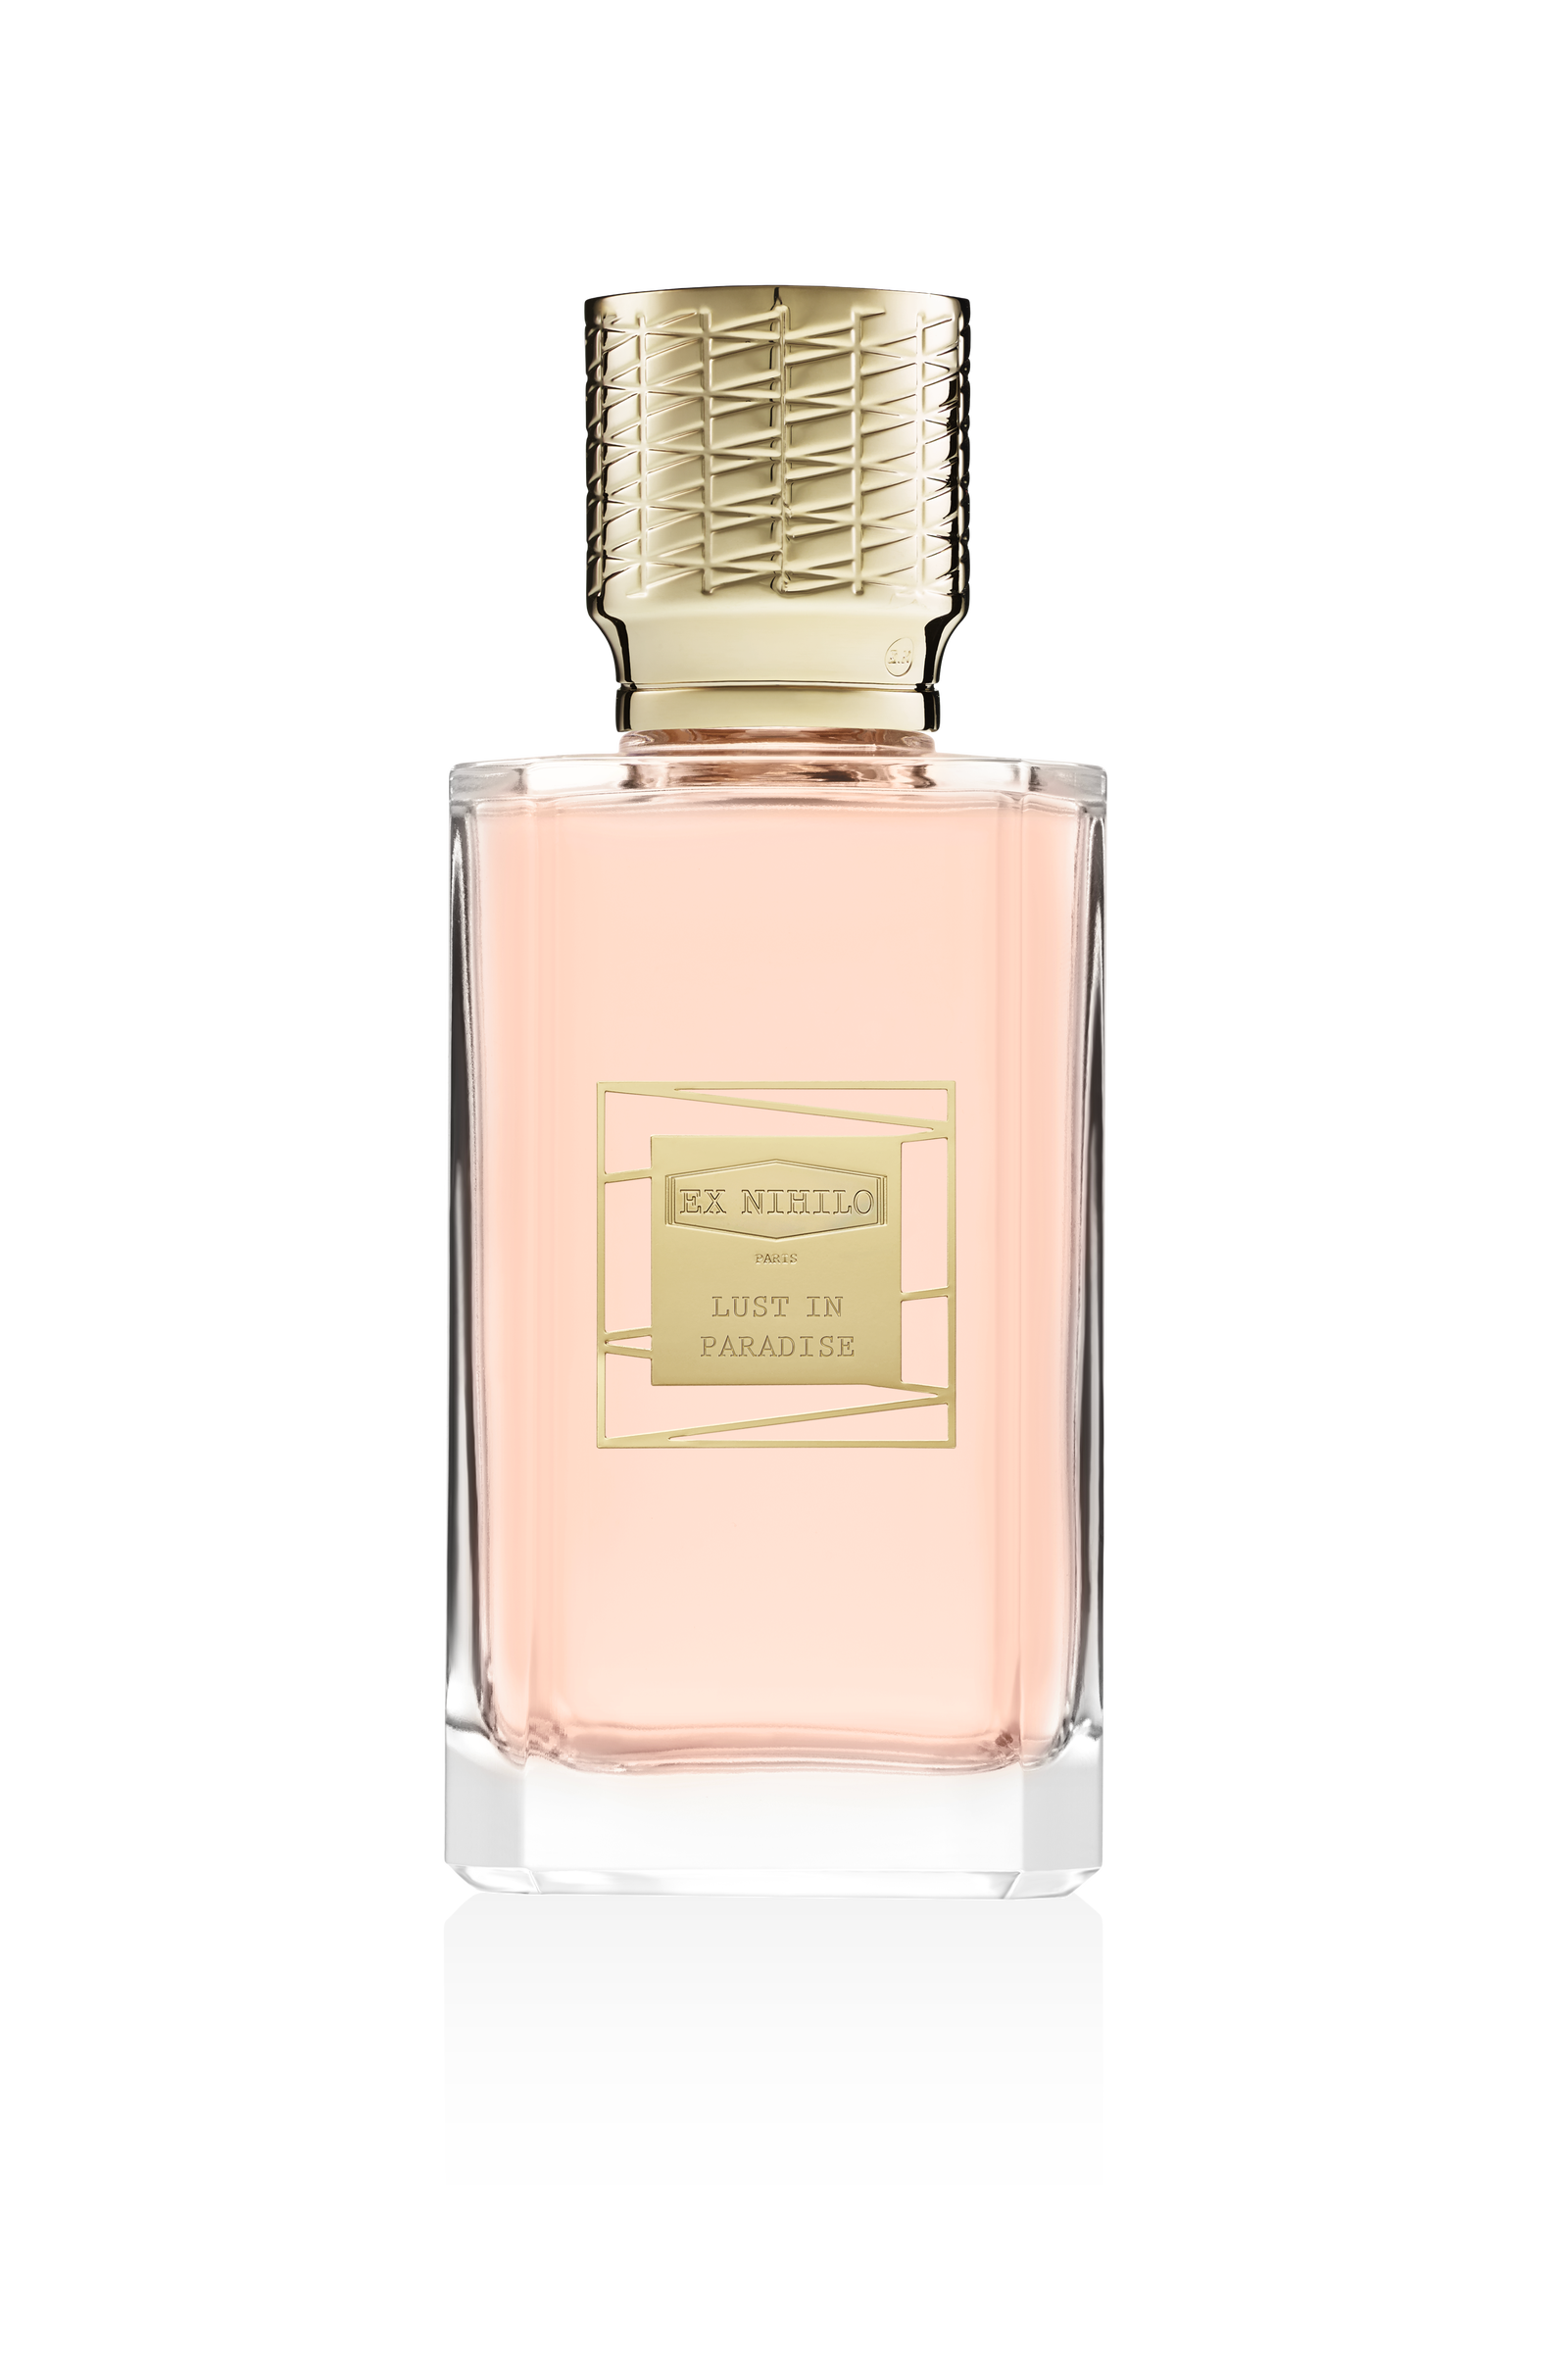 Цветочный аромат Lust in Paradise с нотами розового перца белого пиона и личи Ex Nihilo.